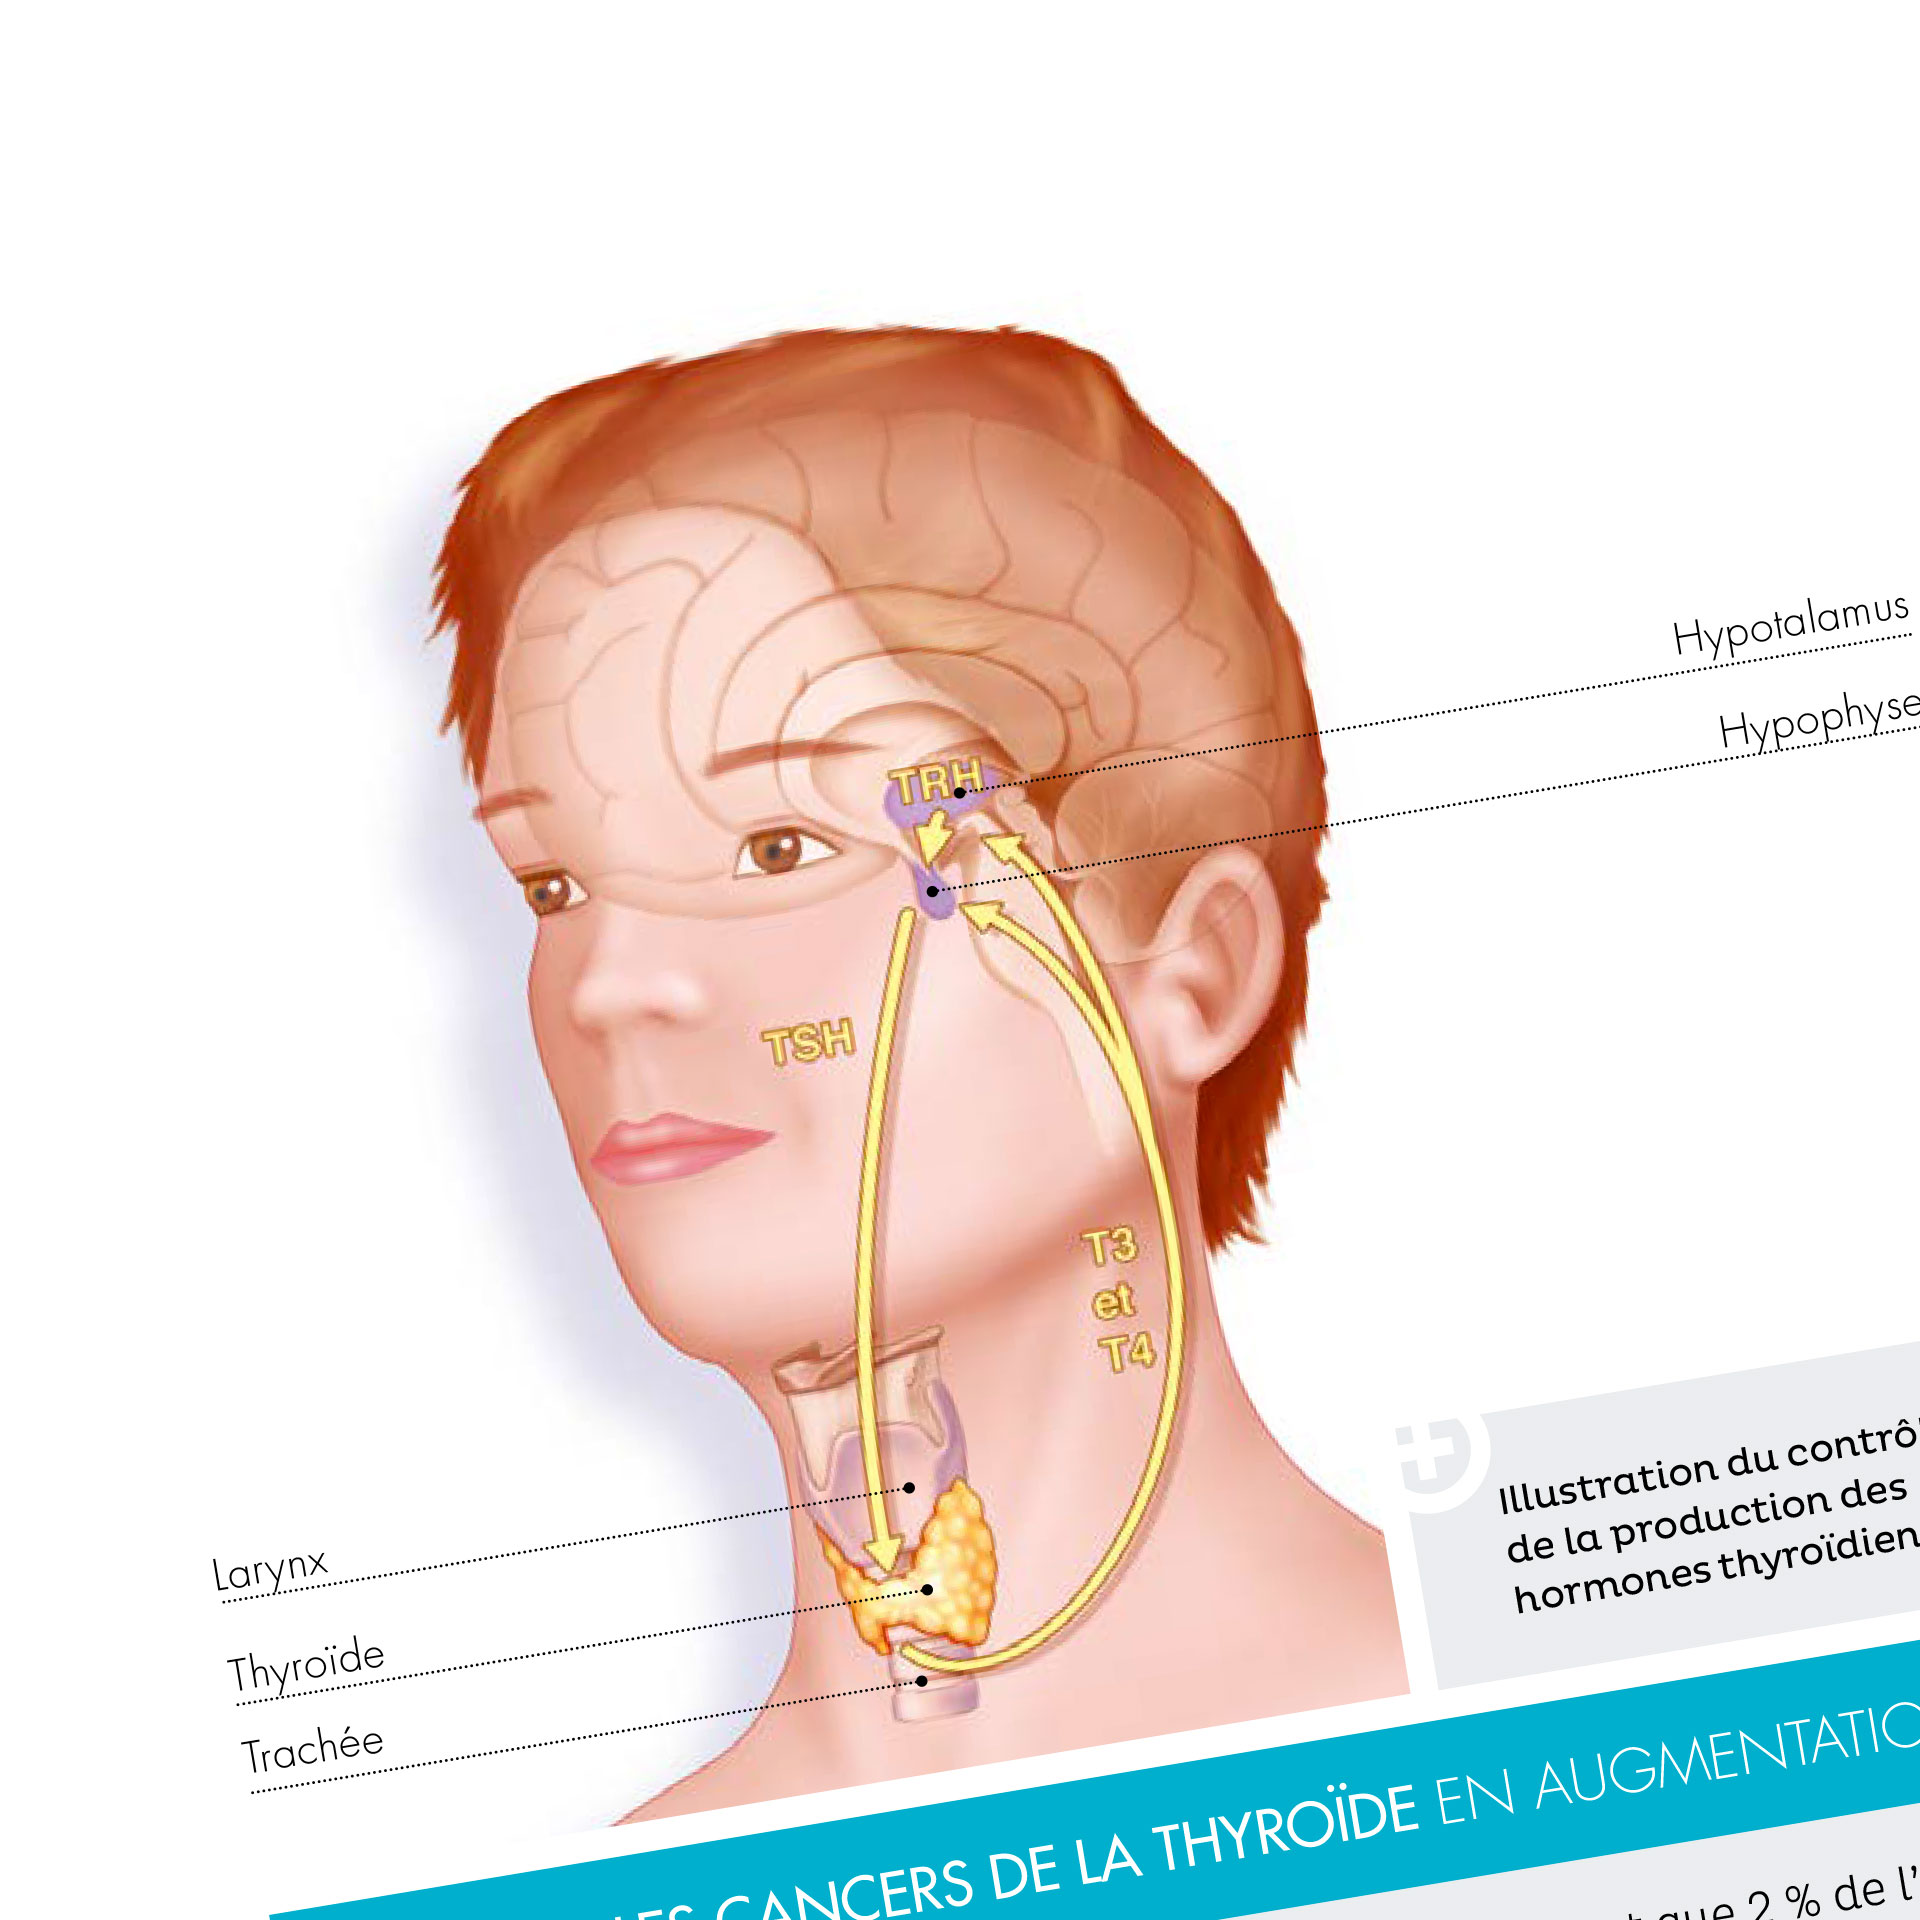 Zoom sur une illustration médicale, on y distingue le cerveau d'une personne ainsi que sa thyroïde.